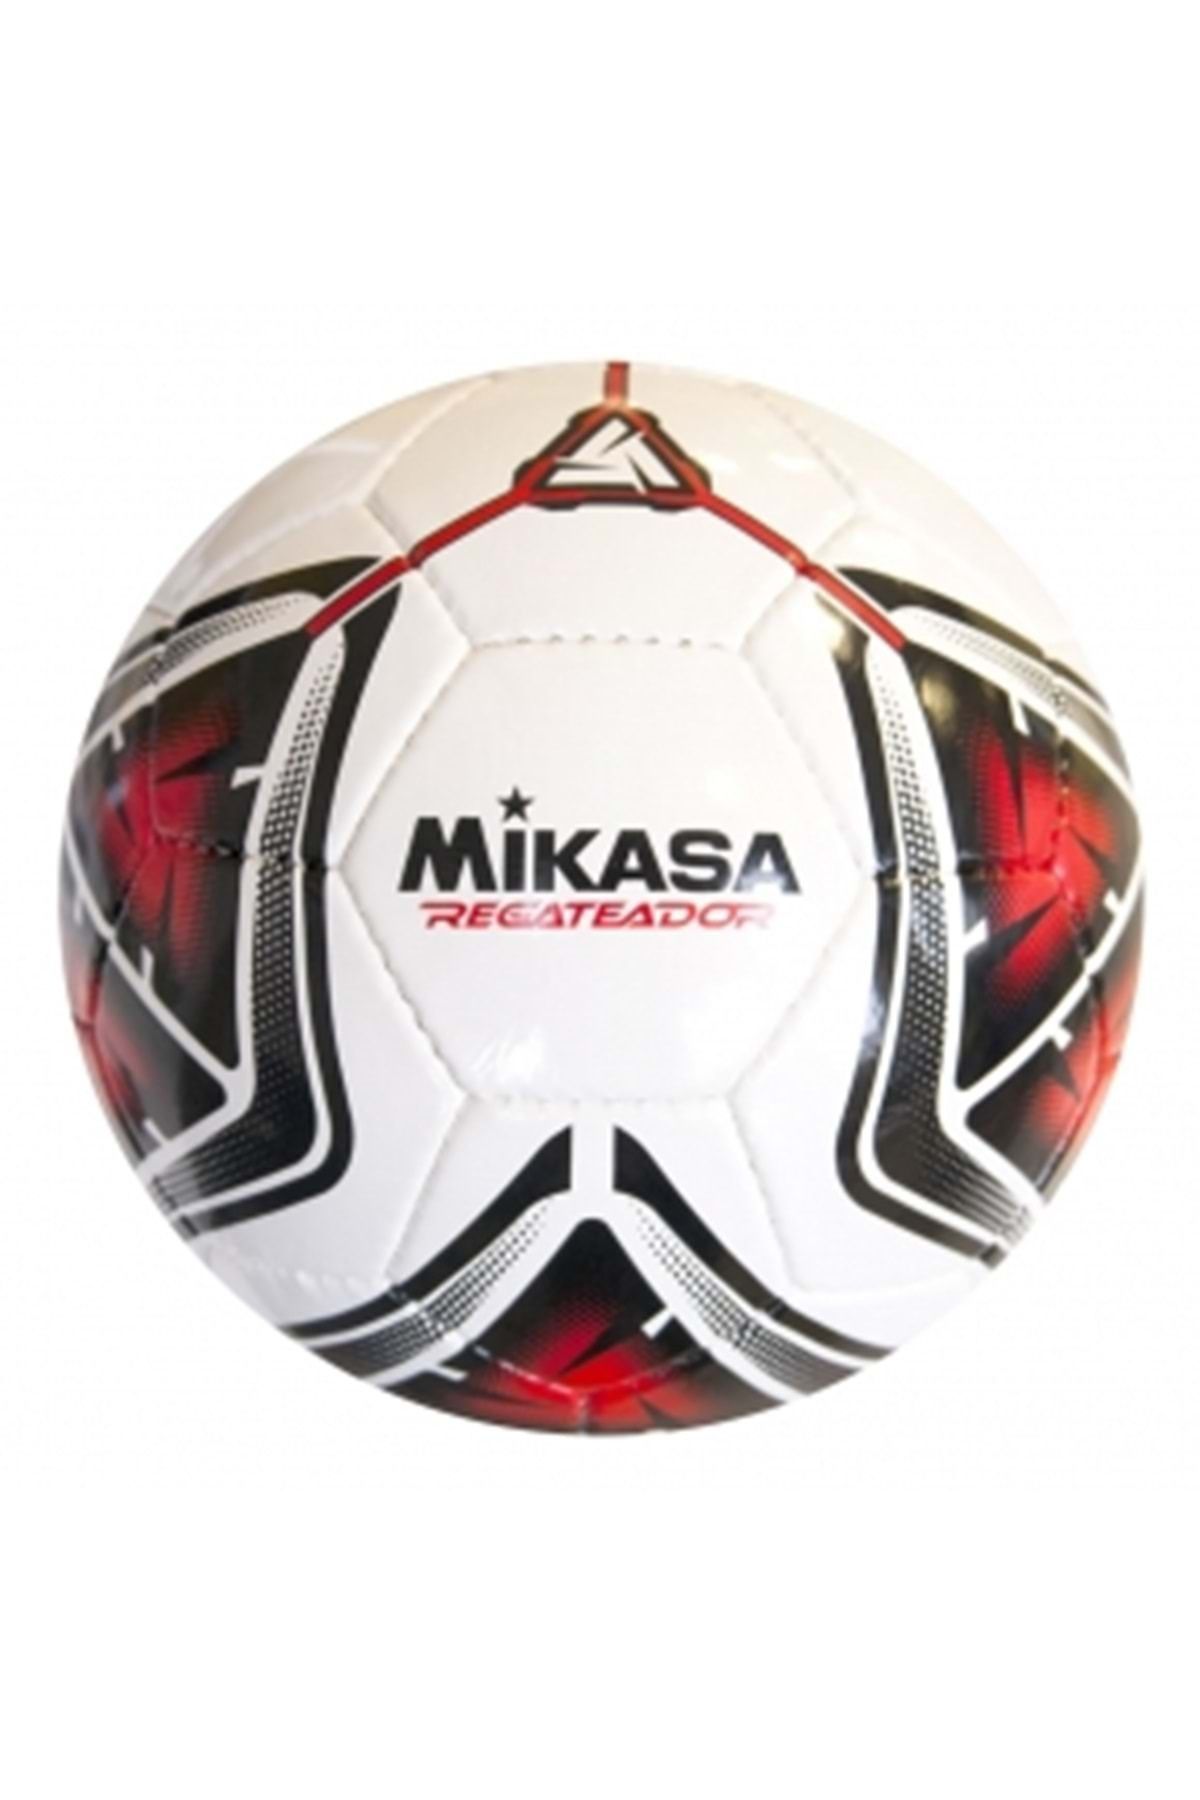 MIKASA Regateador 5 Numara El Dikişli Halı Saha Futbol Topu Kırmızı